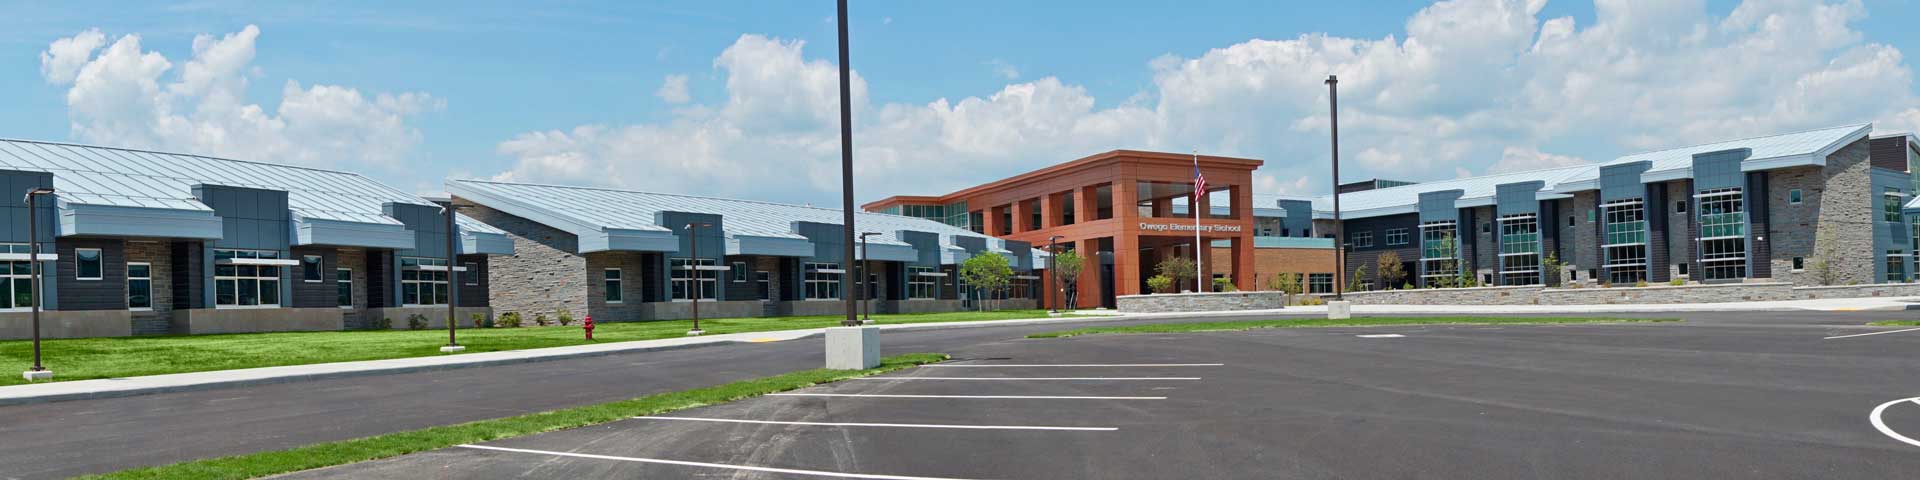 Owego Elementary School